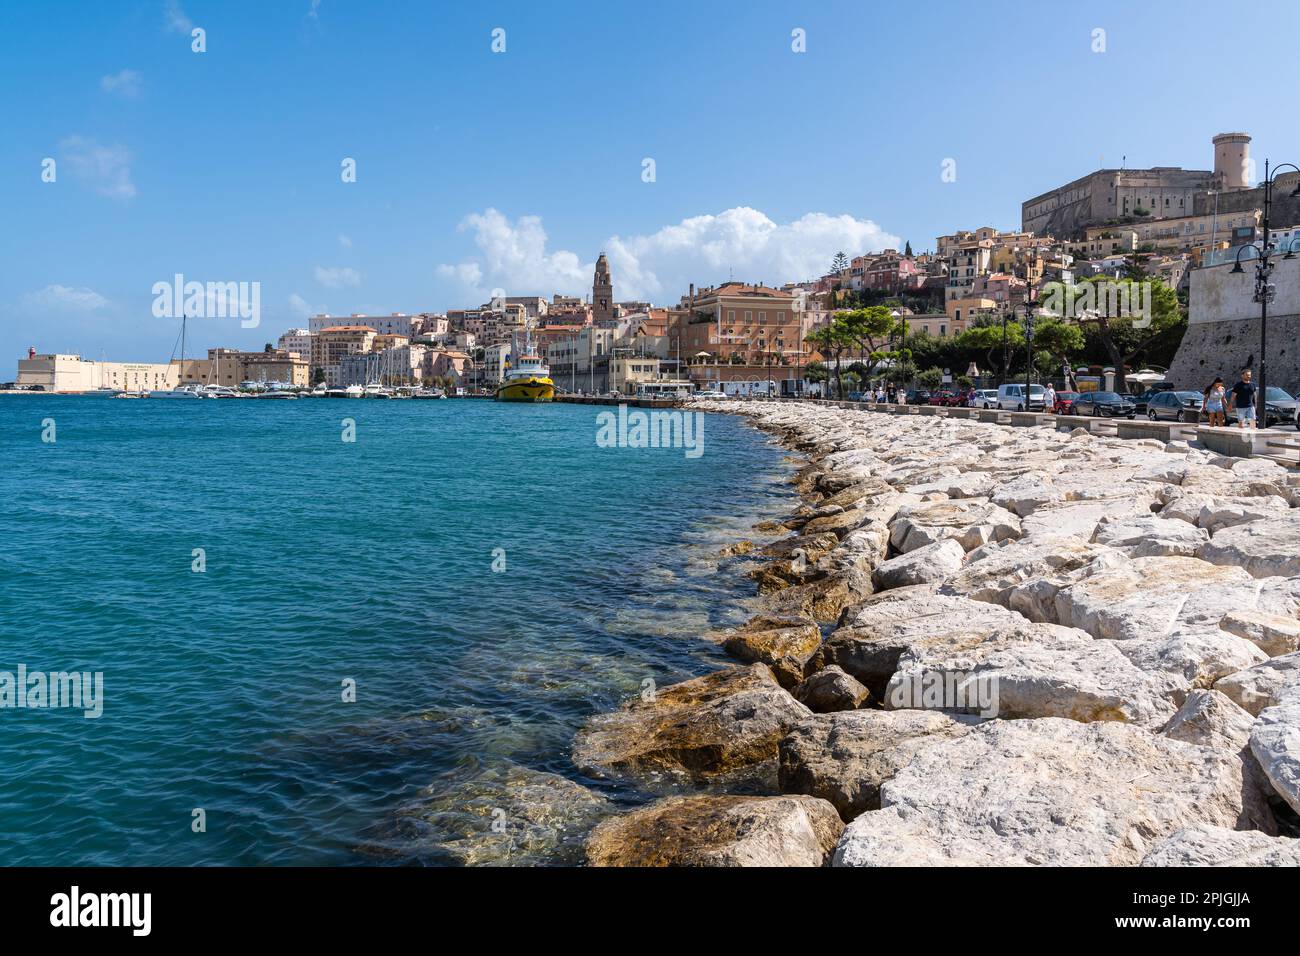 Le front de mer de Gaeta, une ville historique et une destination touristique populaire sur la mer Méditerranée, Lazio, Italie Banque D'Images